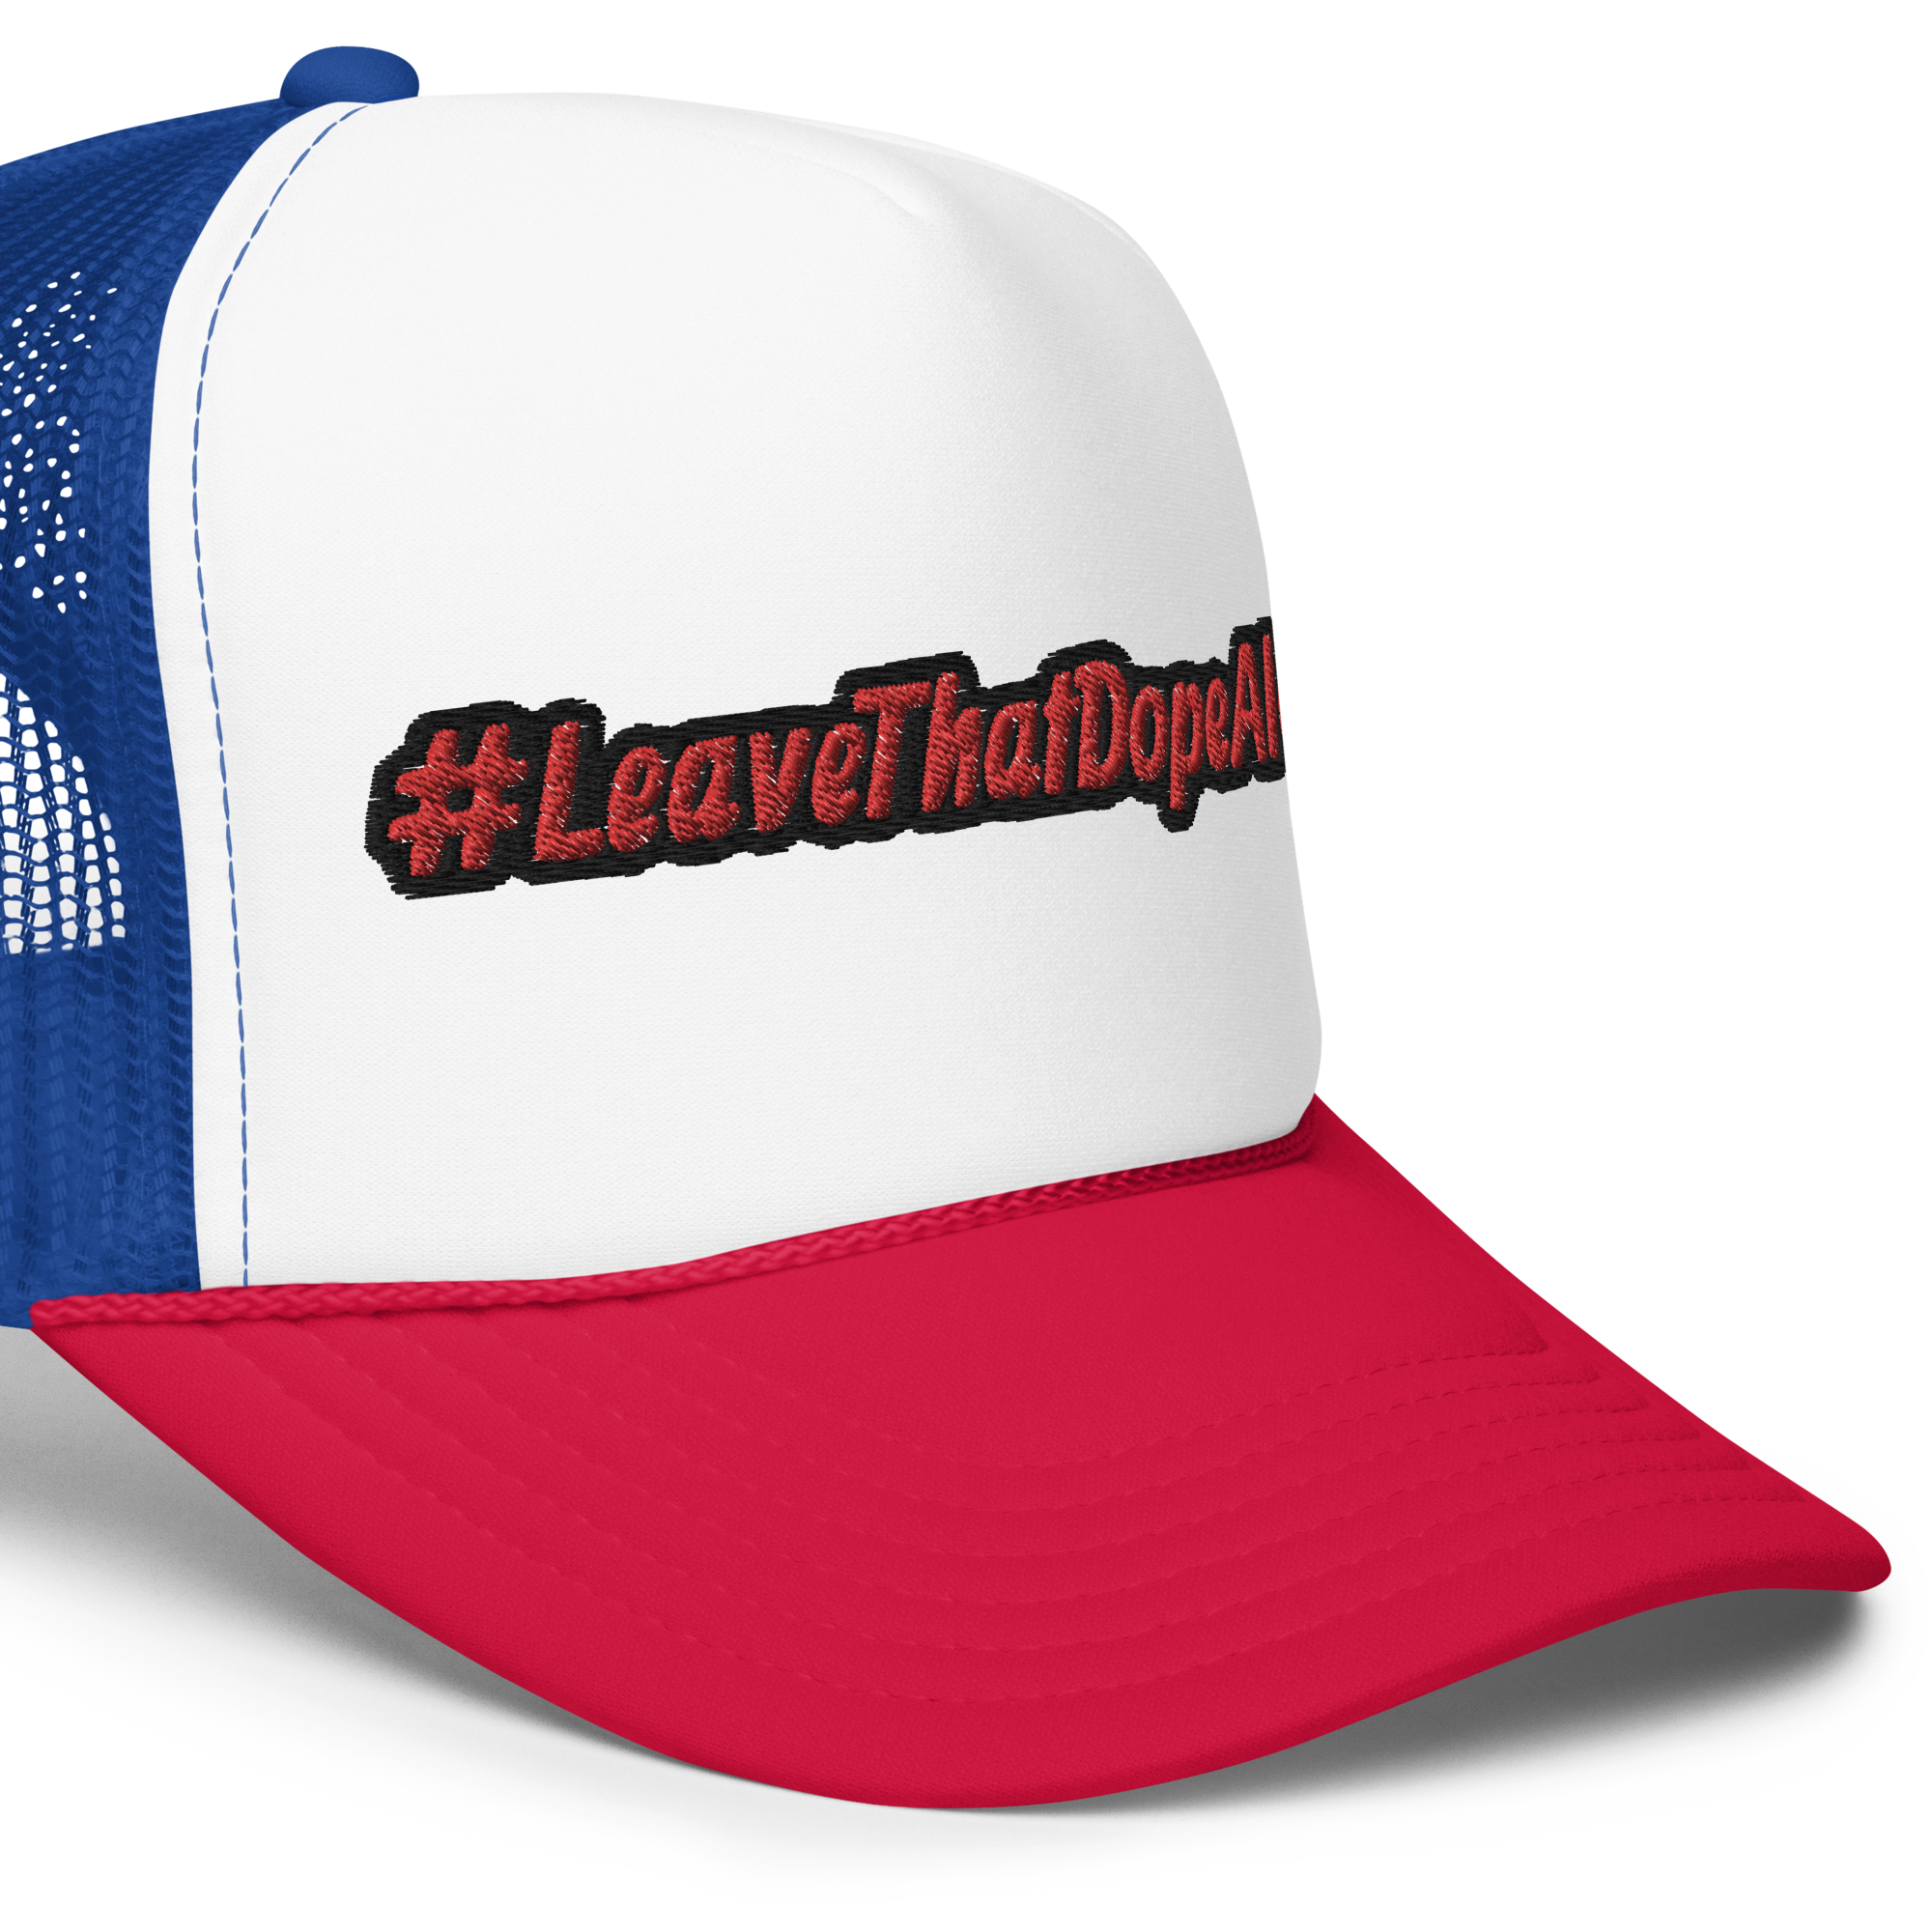 Foam trucker hat #LeaveThatDopeAlone